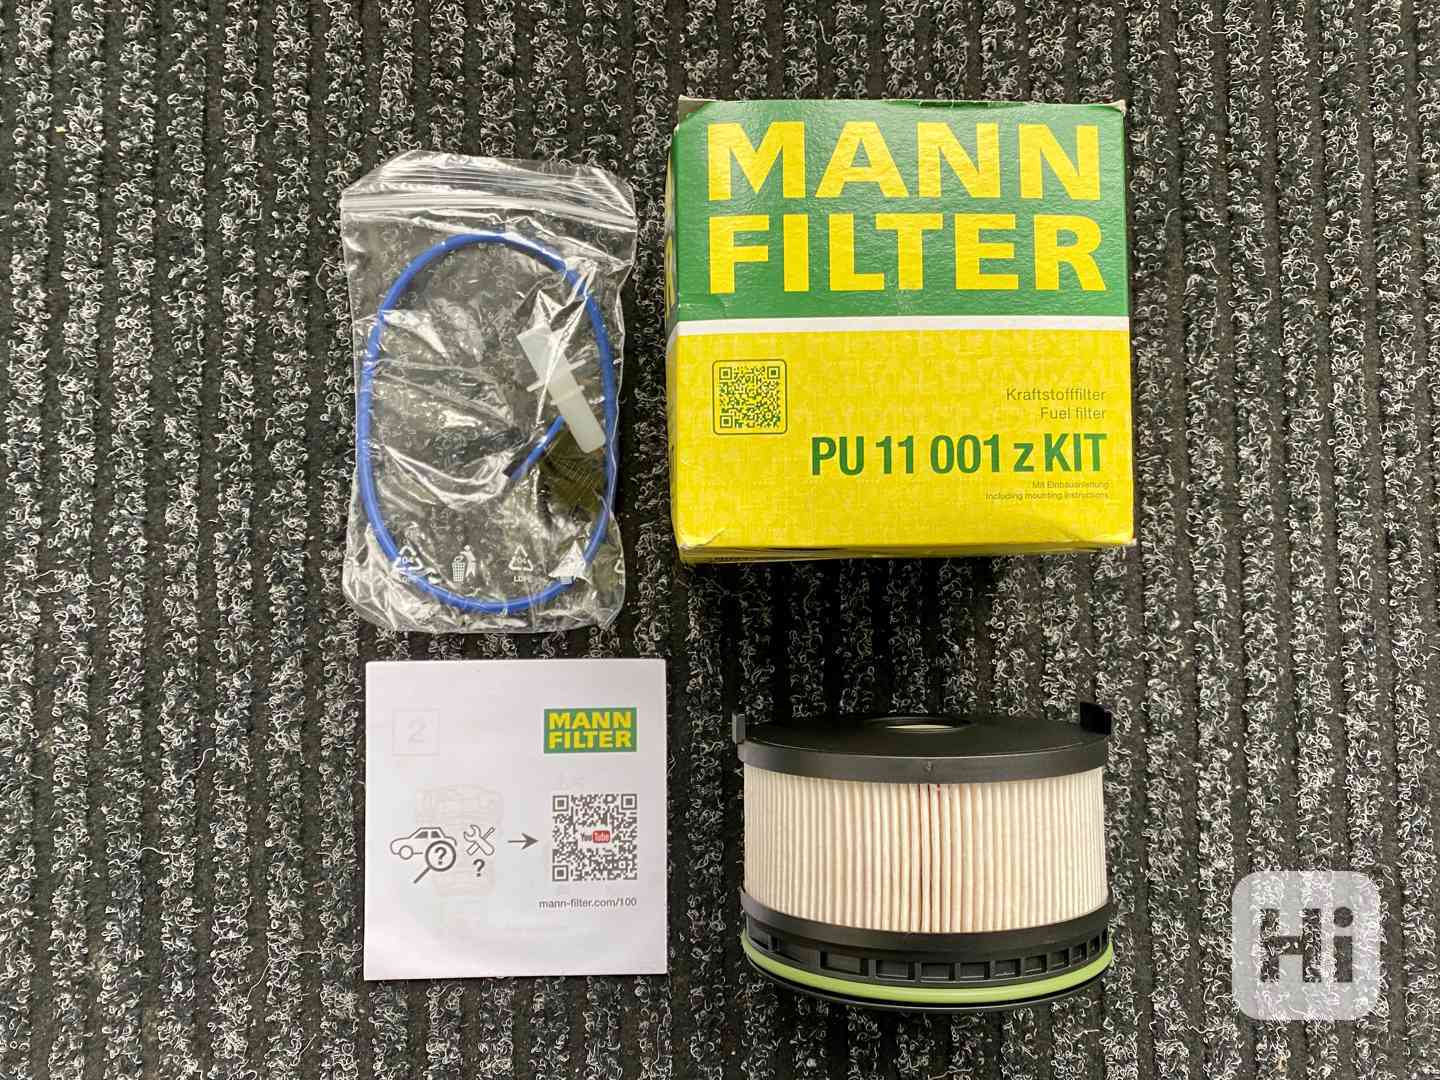 Nový palivový filtr Mann Filter Mercedes Benz ( PC:1.995kč ) - foto 1